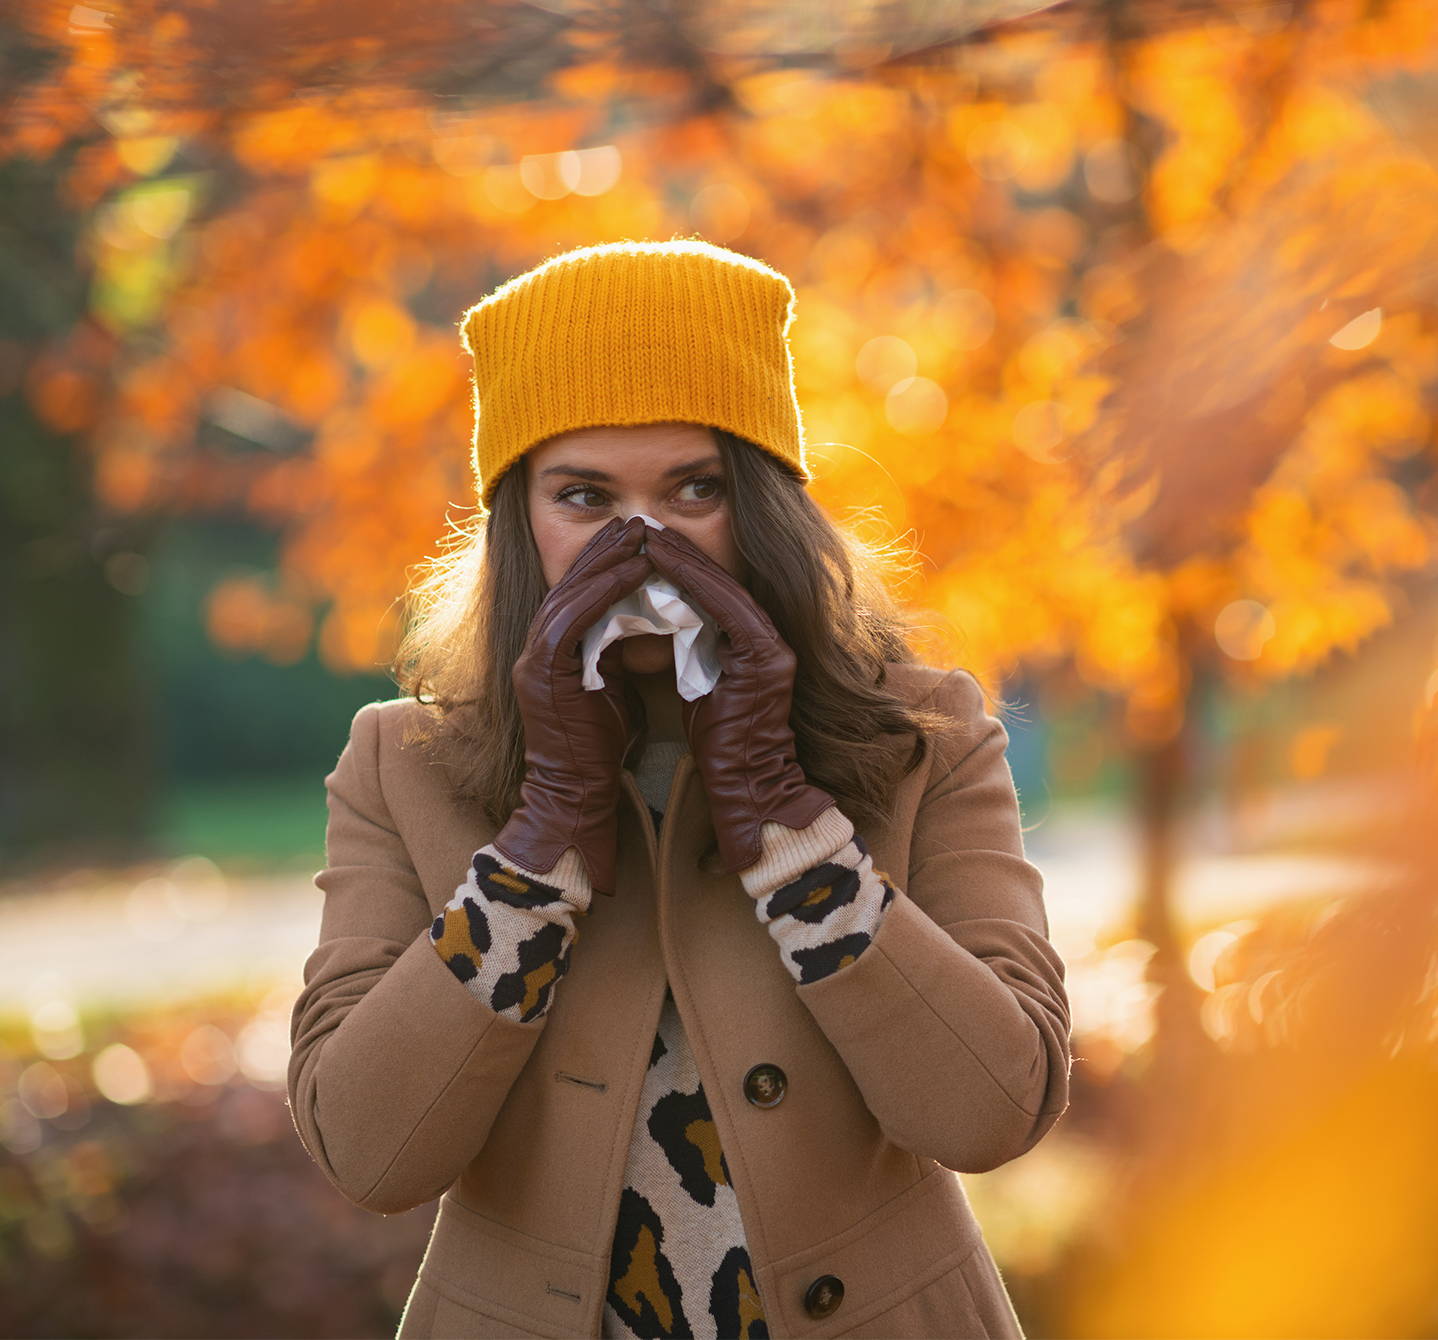  Symptome einer Schimmelpilzallergie – Frau mit Kopfbedeckung und Handschuhen, die sich die Nase putzt als Reaktion auf Schimmel, der sich in Herbstlaub bildet.